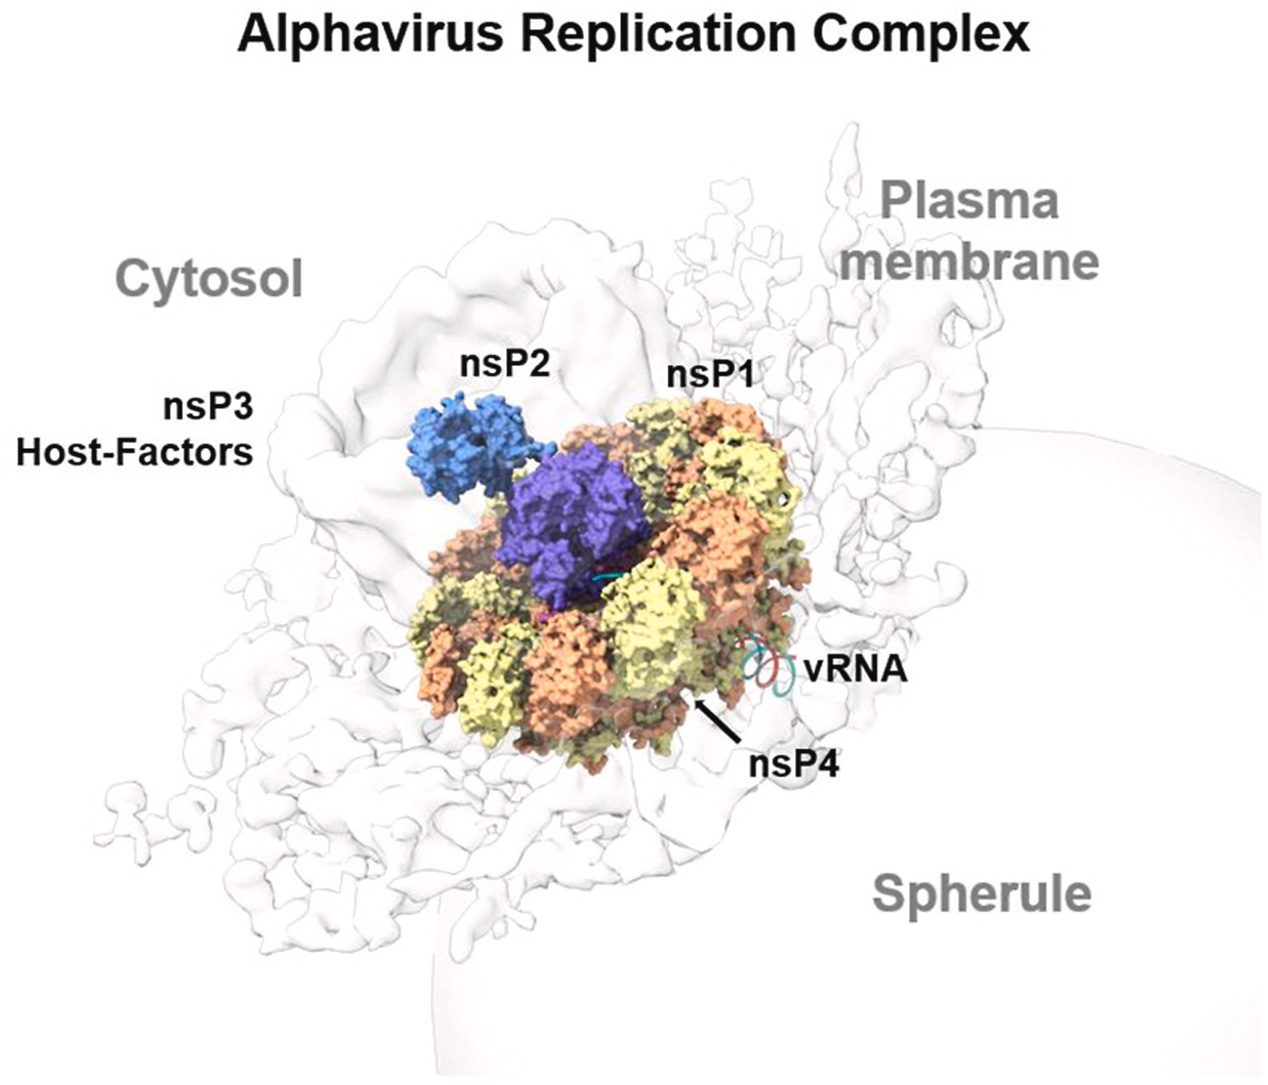 Replication complex of Chikungunya virus